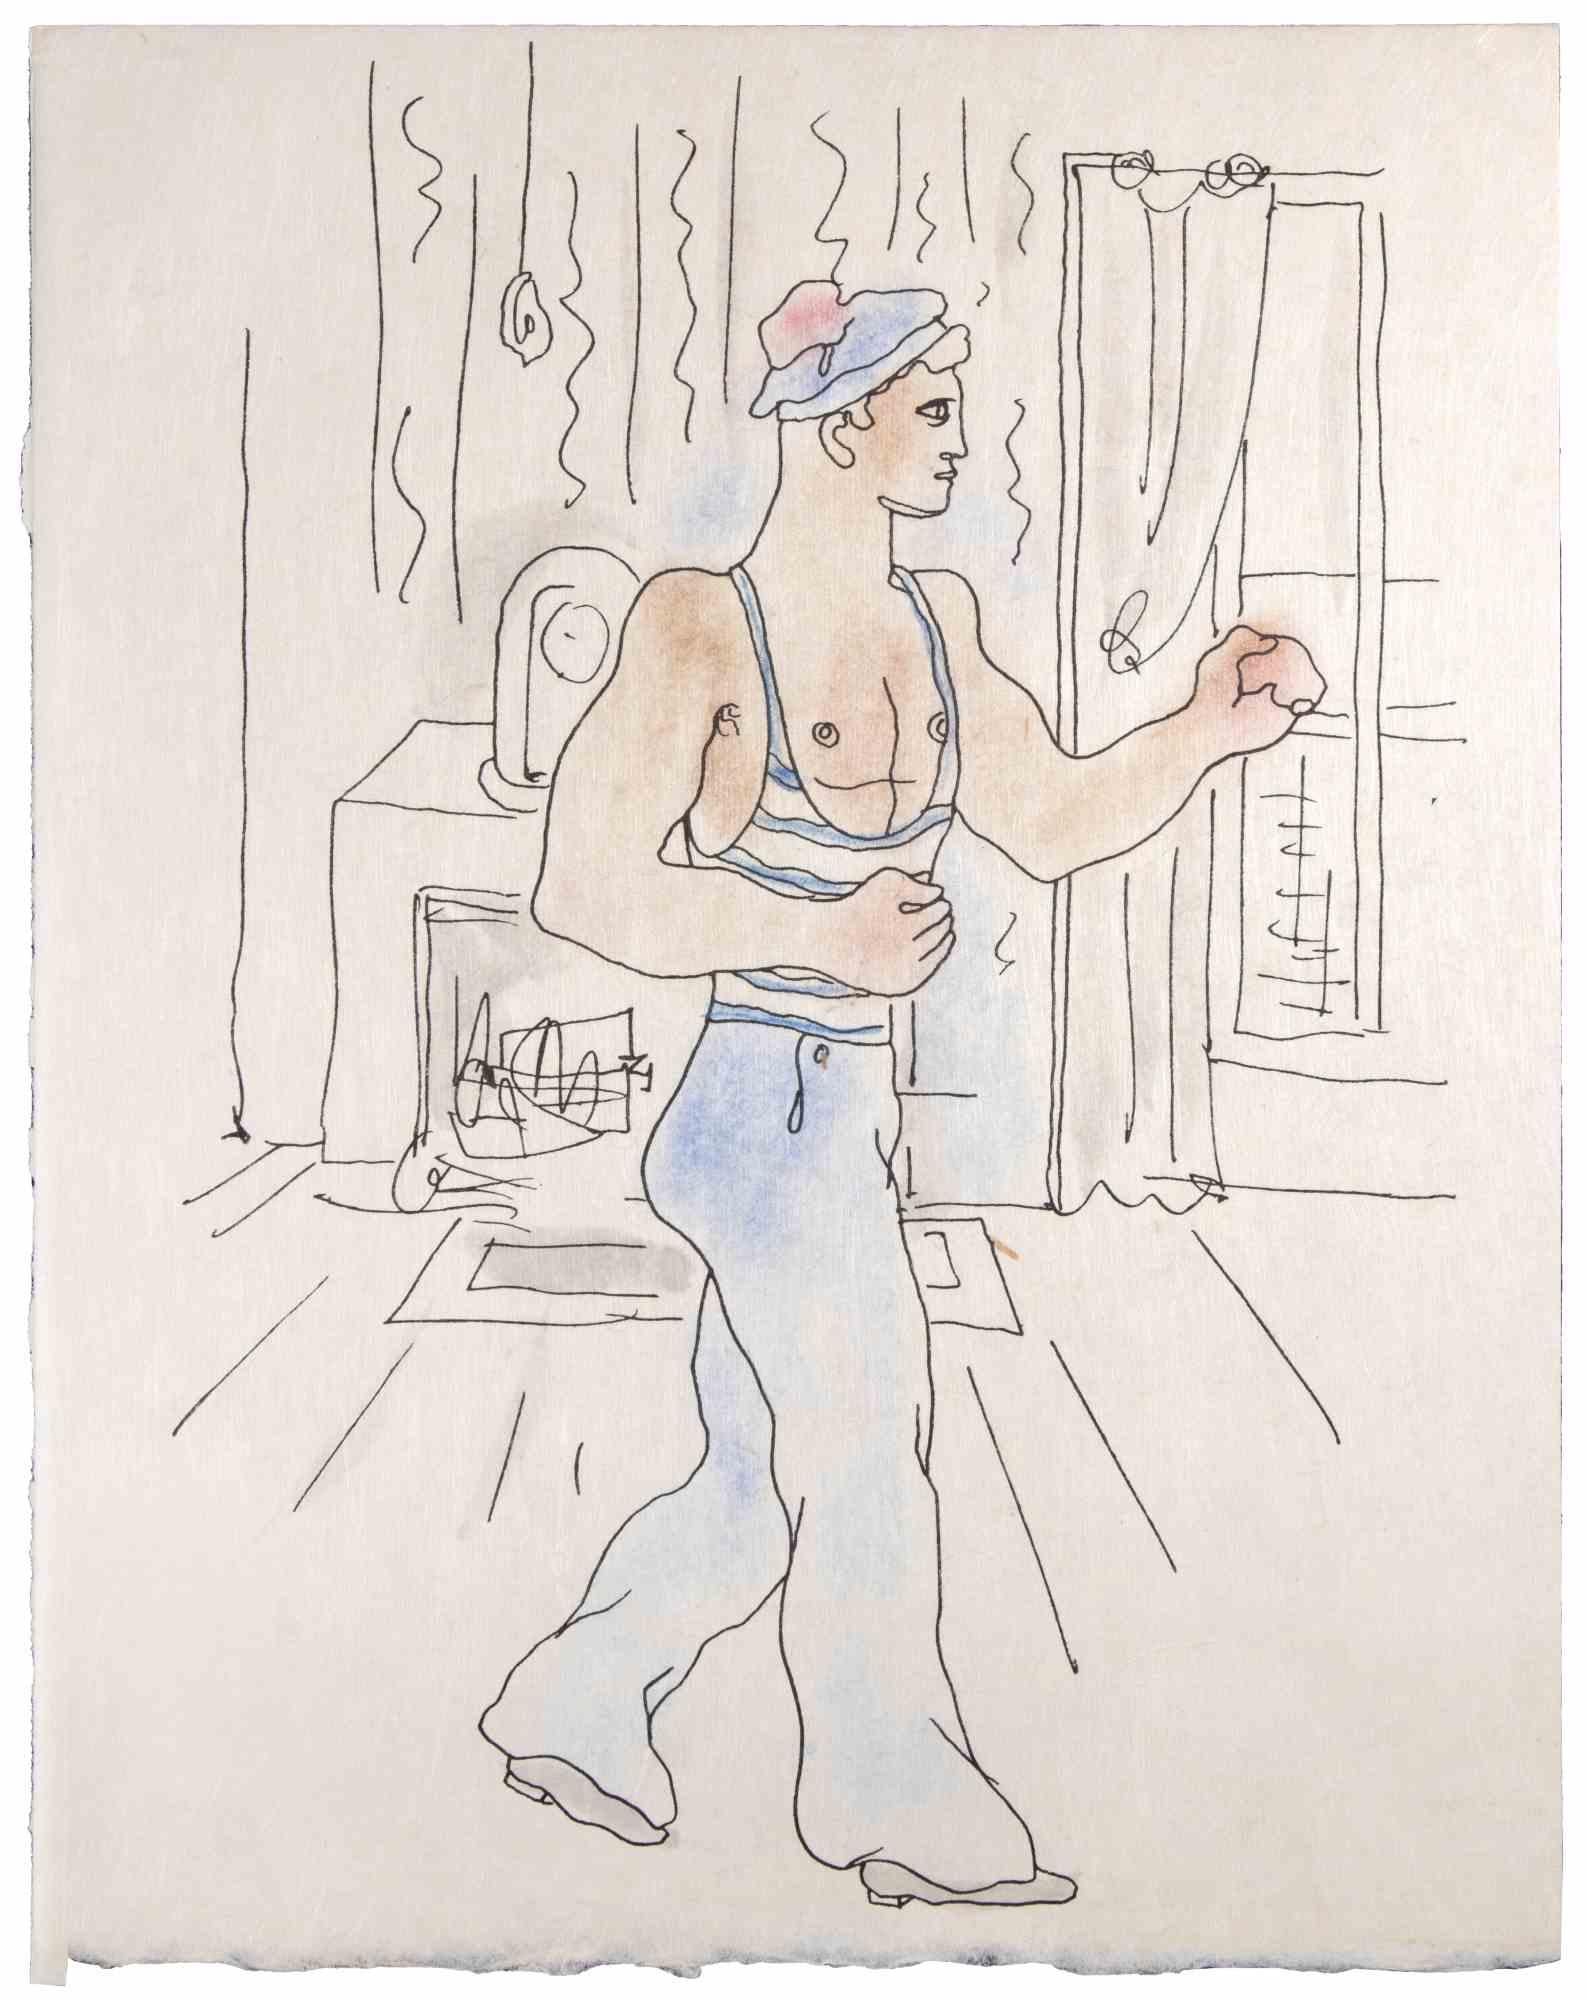 Sailor ist eine kolorierte Lithographie auf Japanpapier von Jean Cocteau (1889 -1963) aus dem Jahr 1930. 

Französischer Zeichner, Dichter, Essayist, Dramatiker, Librettist, Filmregisseur.

Ausgezeichneter Zustand, keine Signatur.

Das Kunstwerk